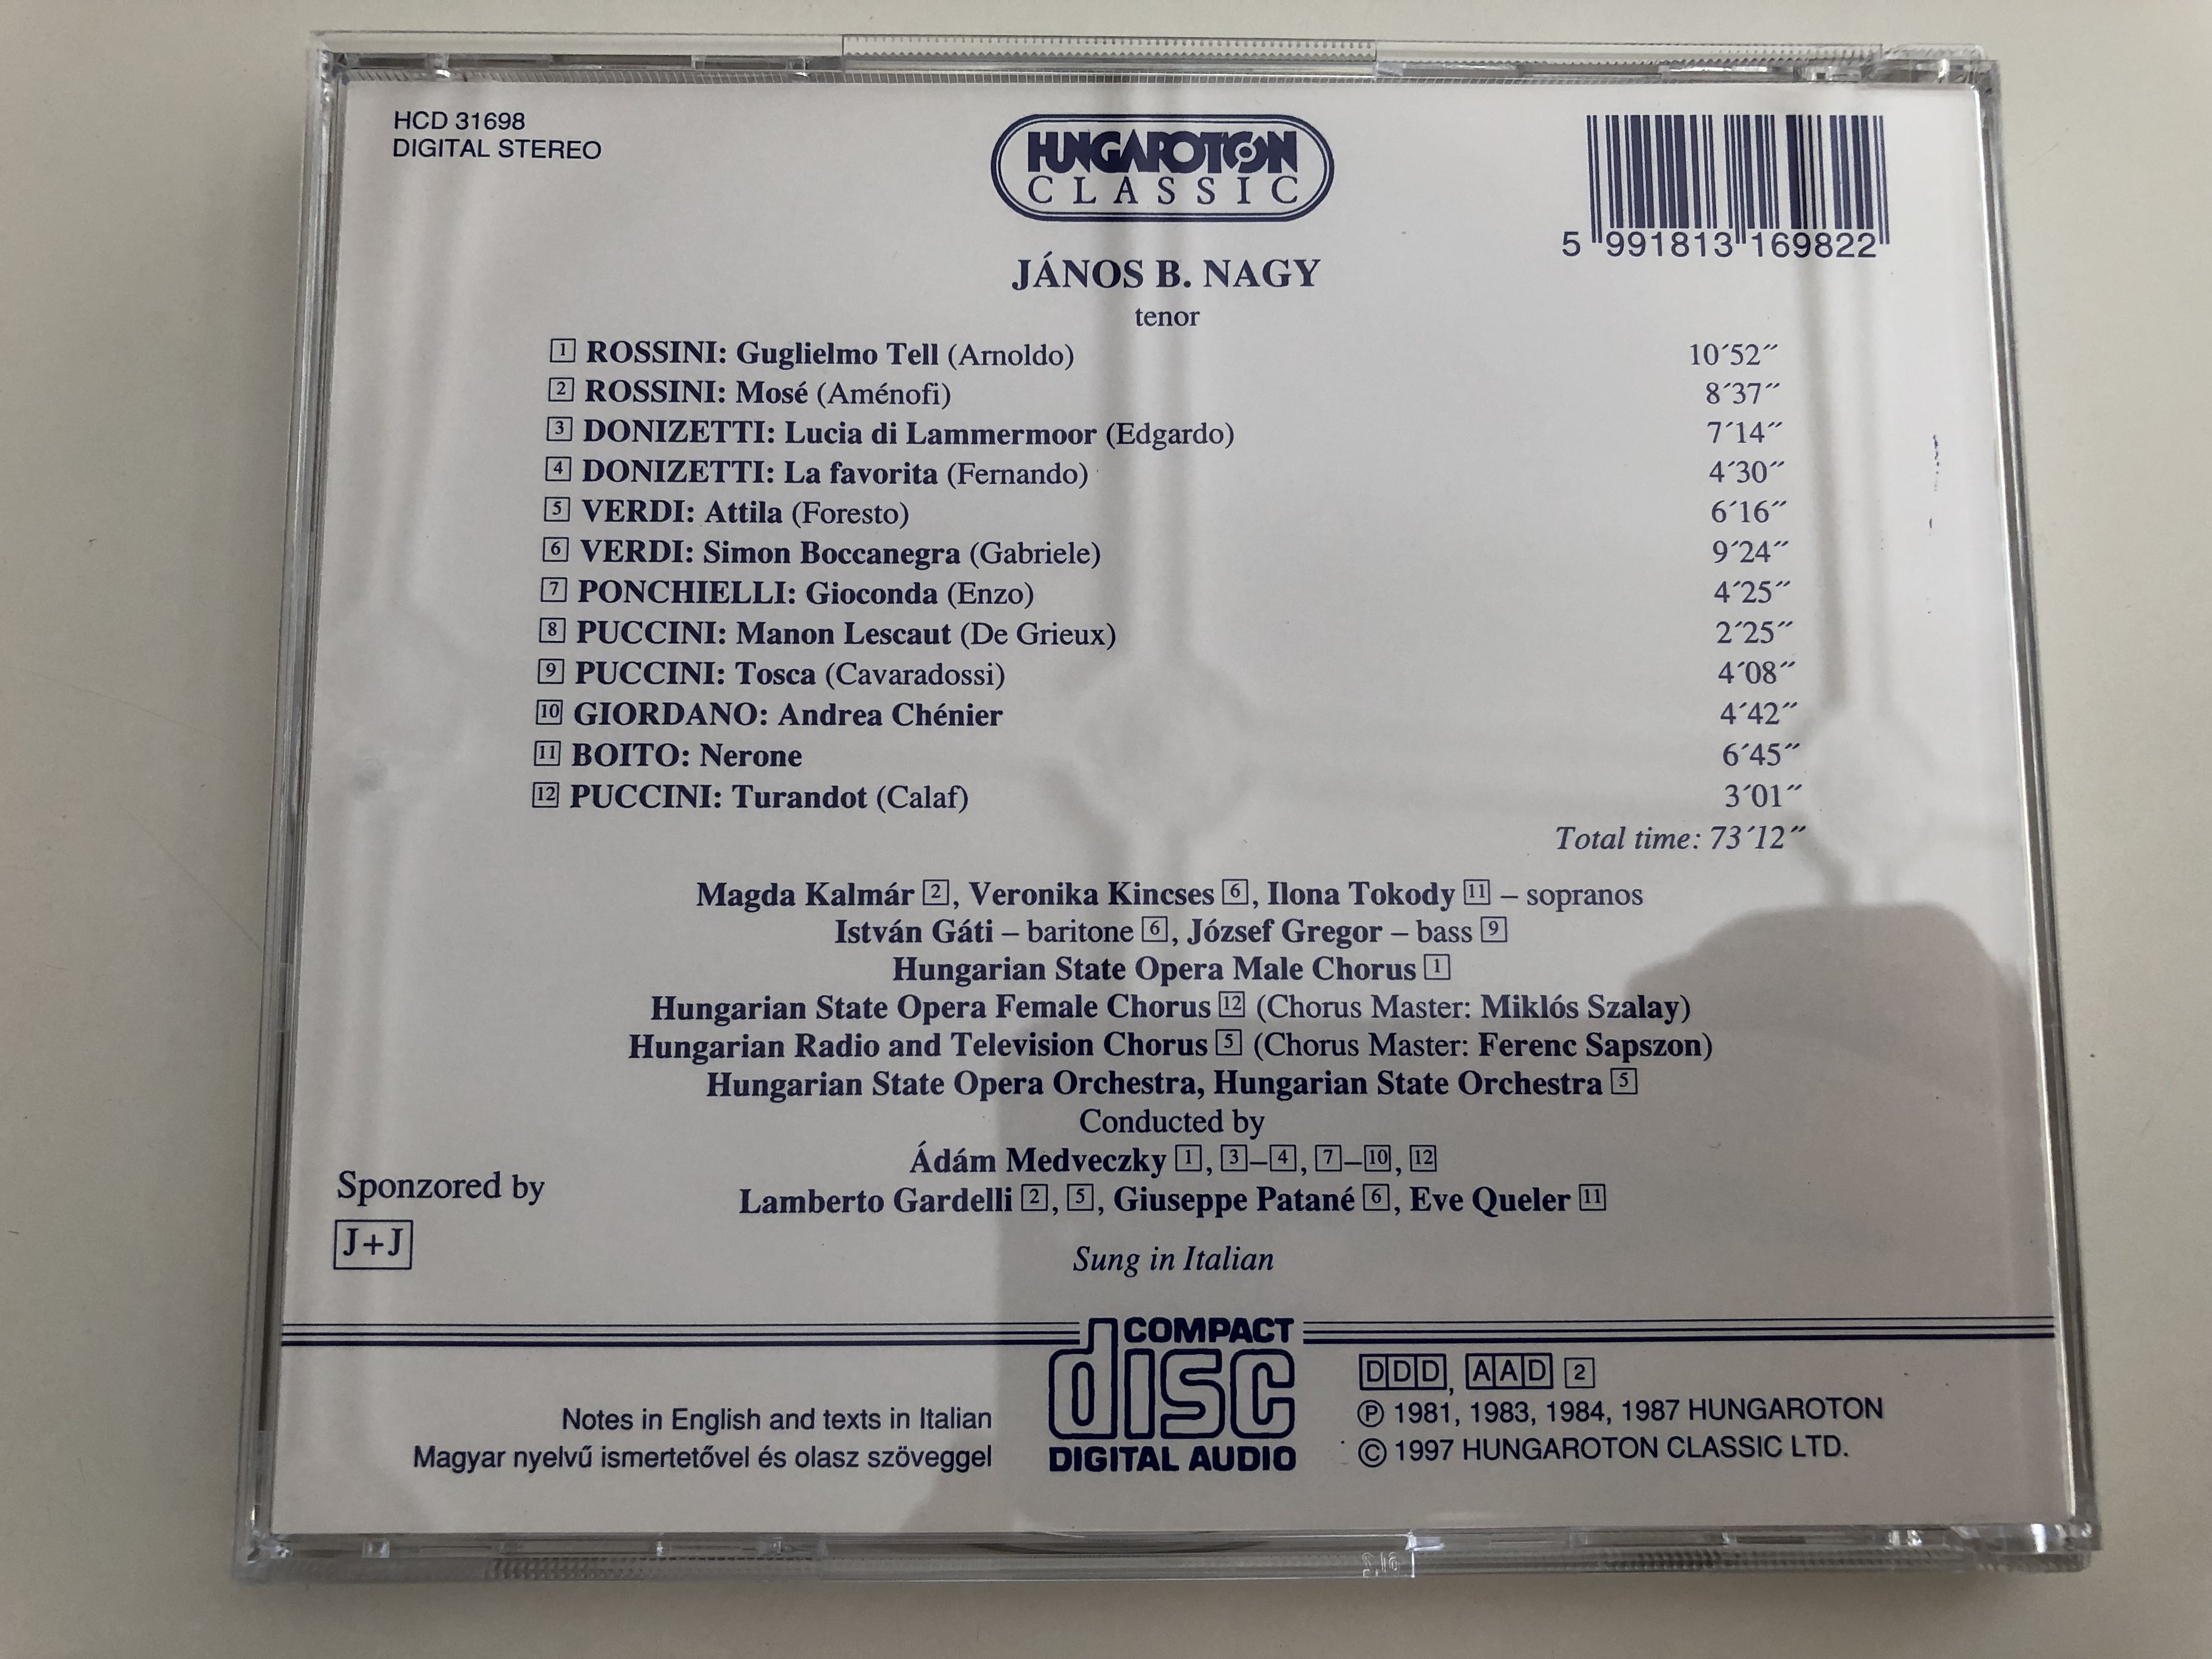 j-nos-b.-nagy-tenor-rossini-donizetti-verdi-ponchielli-puccini-giordano-boito-great-hungarian-voices-hungaroton-classic-audio-cd-1997-hcd-31698-12-.jpg